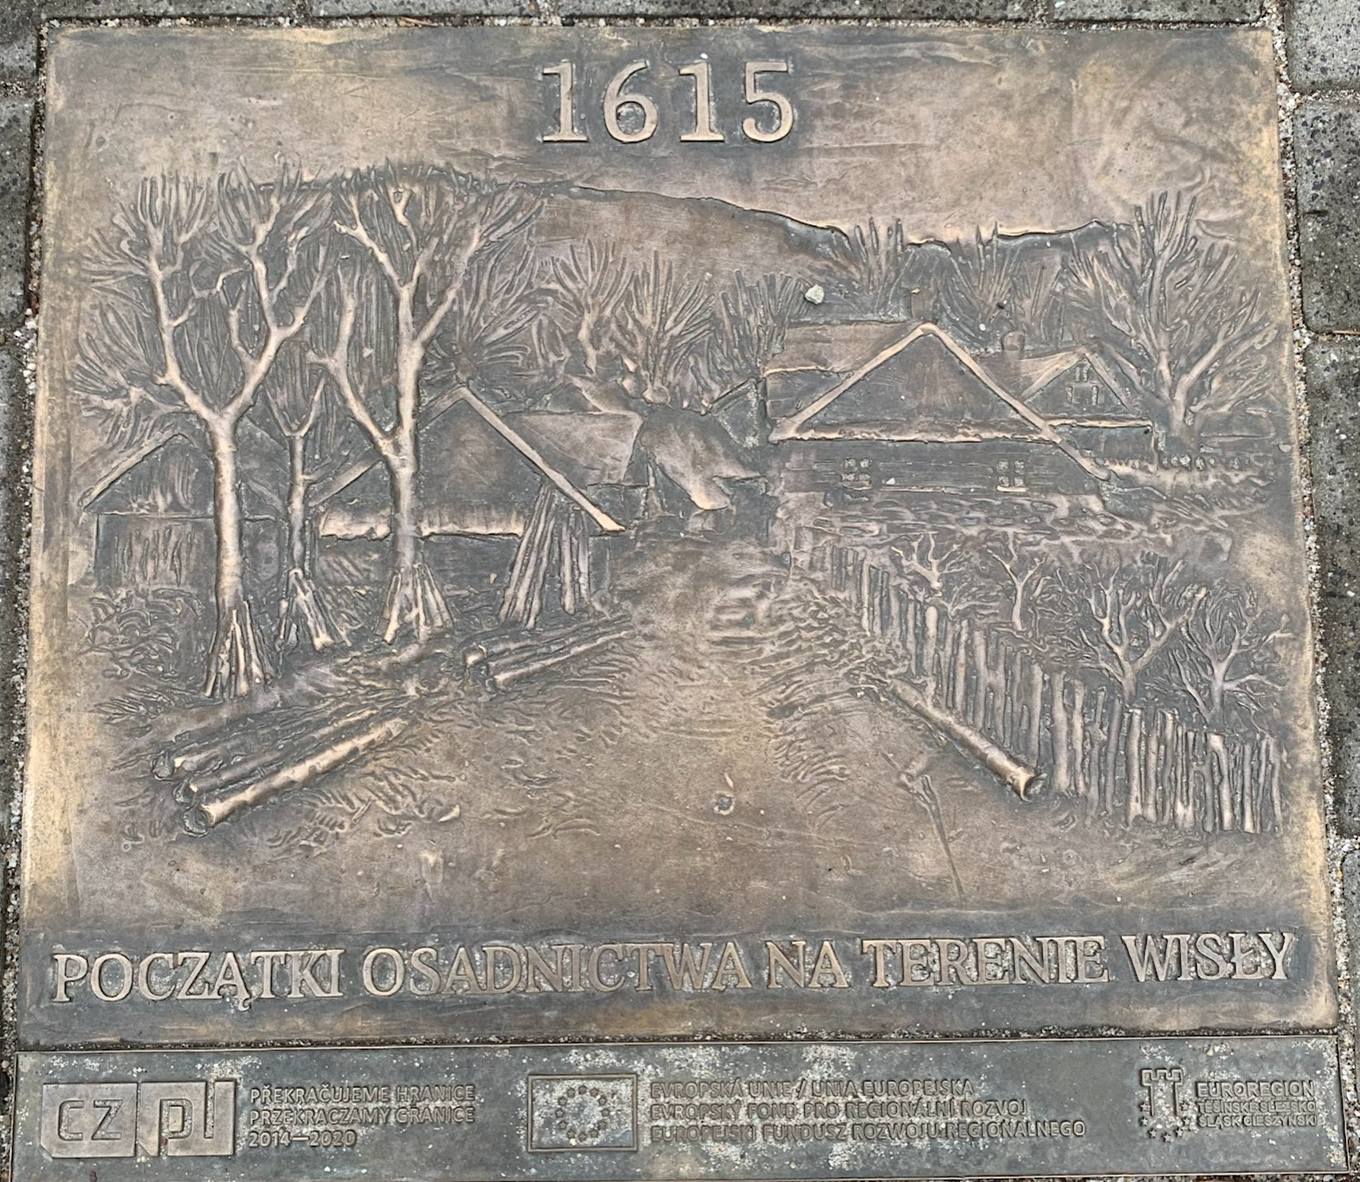 1615r - początki osadnictwa na terenie Wisły